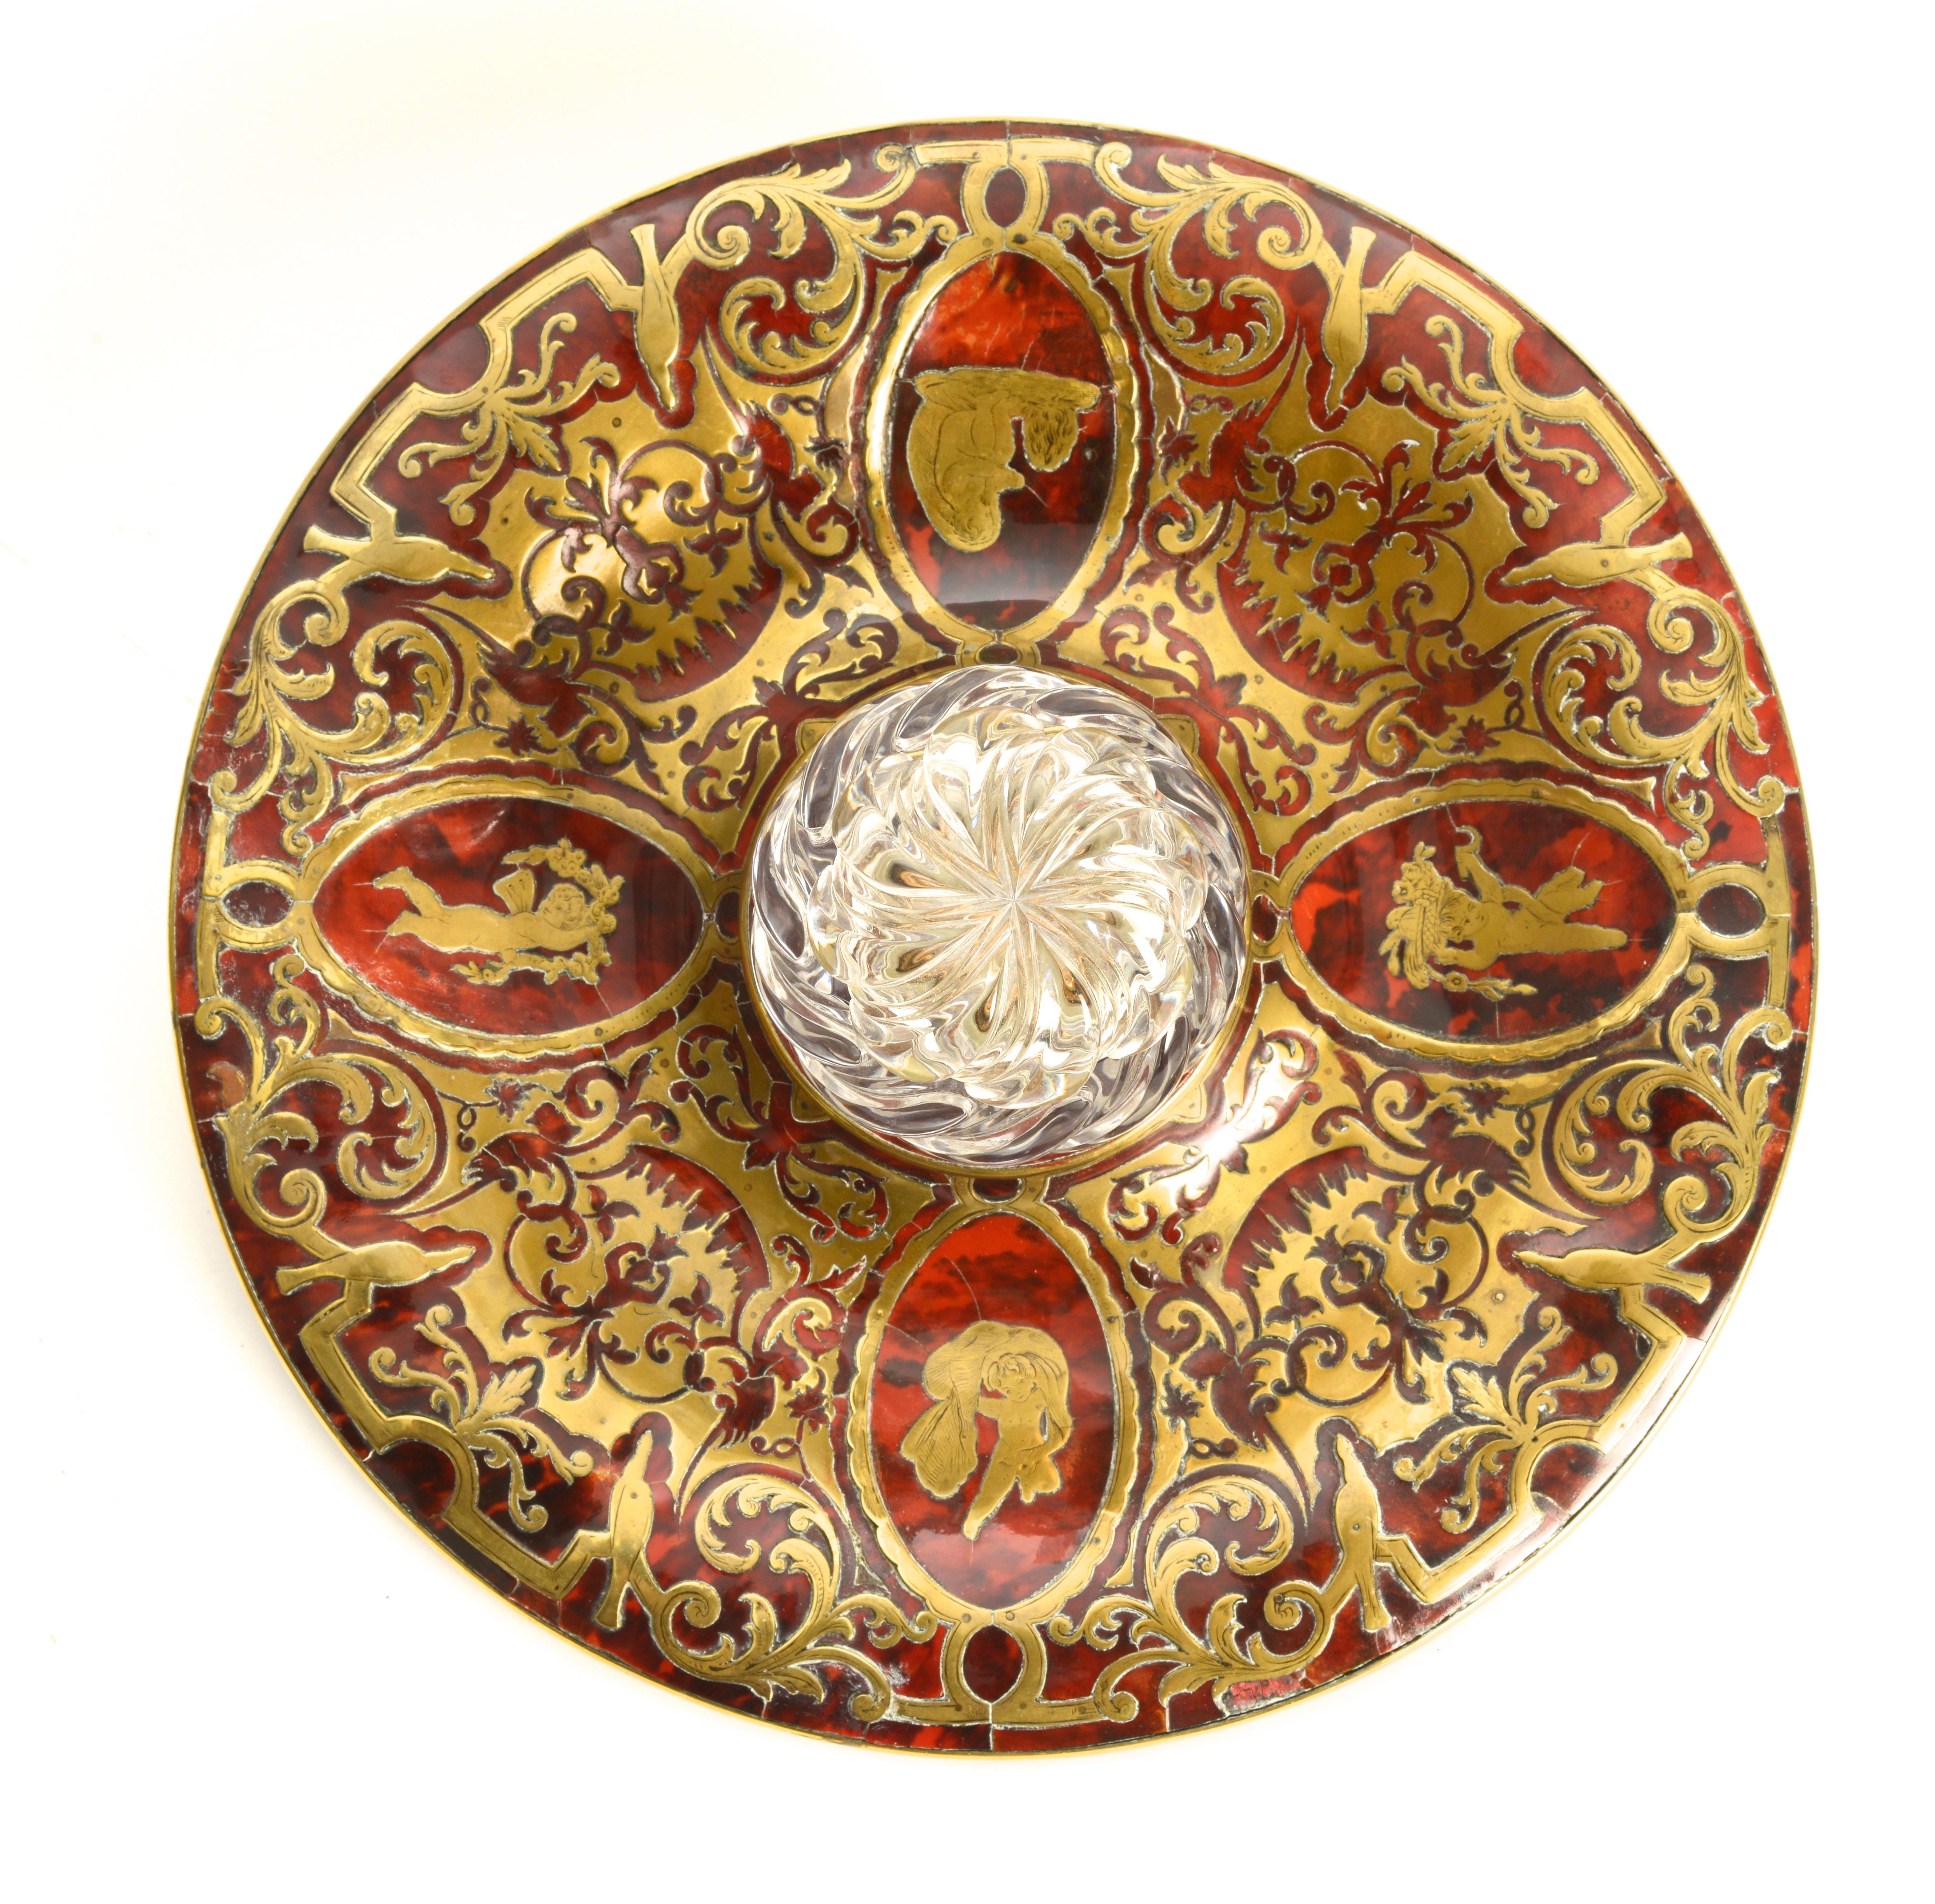 englisches Boulle-Tintenfass mit Messingintarsien von Leuchars & Sons aus dem 19. Jahrhundert mit spiralförmigem Kristalltintenfass, um 1850. Auf dem eingelegten Sockel befinden sich Kameen von Amoretten, die von einem verschnörkelten